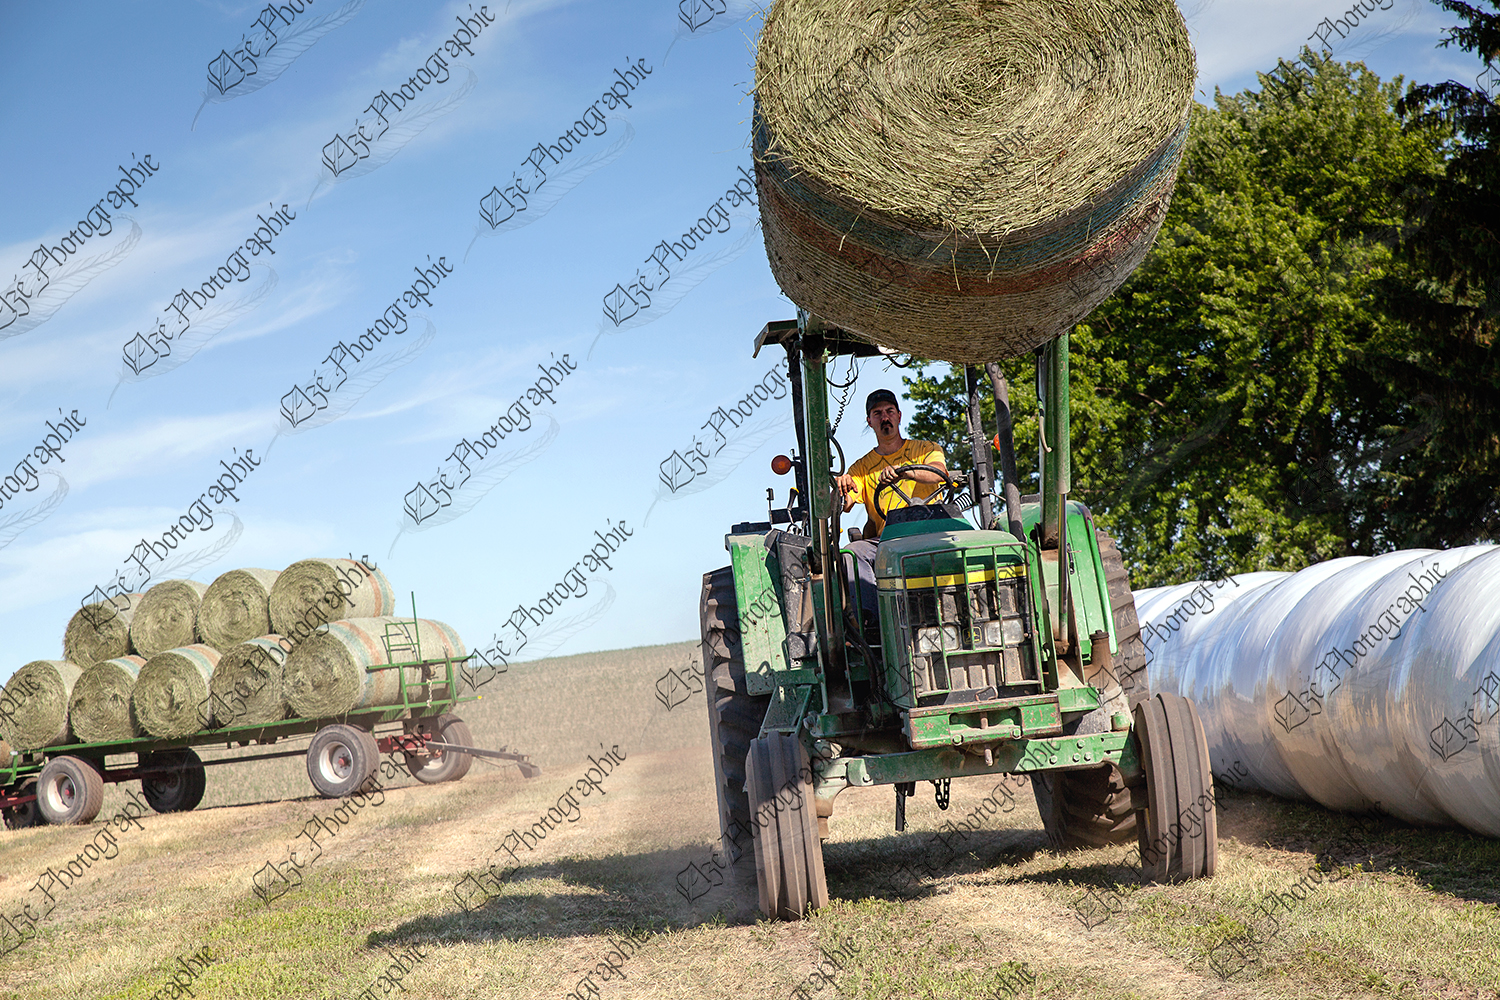 elze_photo_9324_travail_agricole_foin_harvest_summer